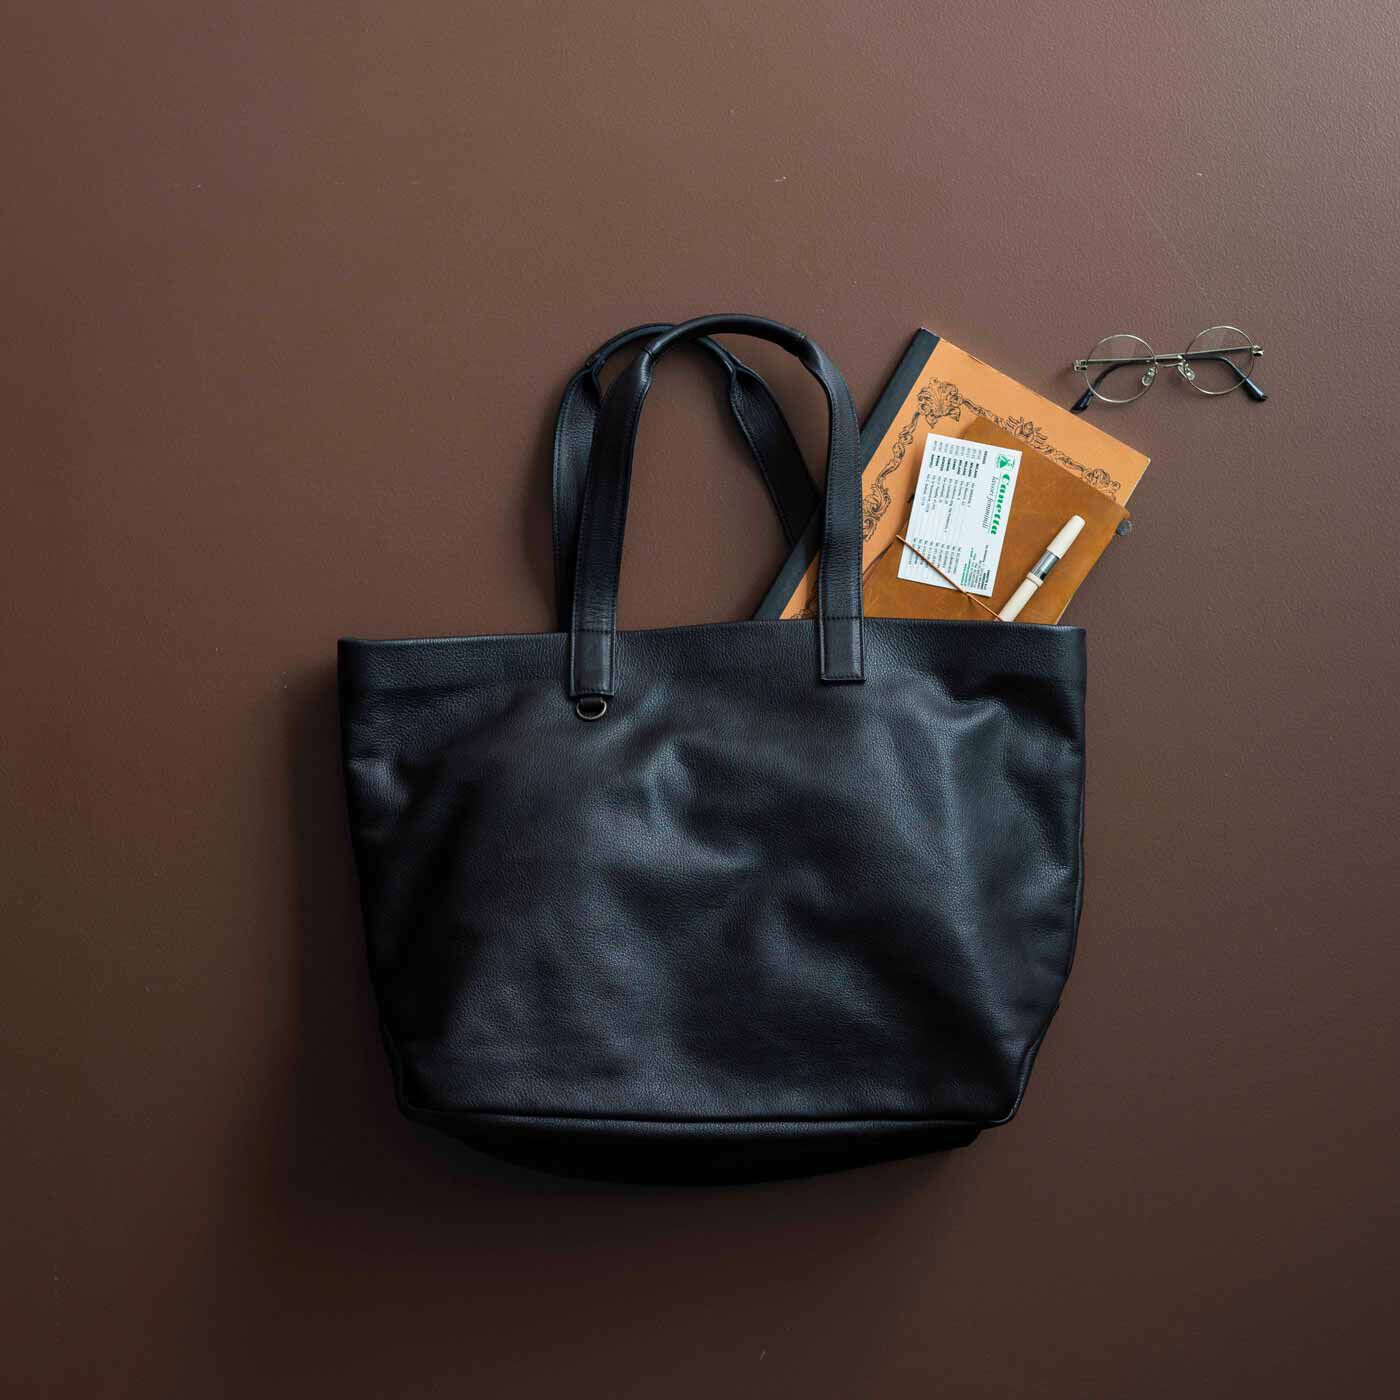 ＆Stories|福岡の鞄作家が作った 職人本革のホエールトートバッグ〈ブラック〉|シボ感のあるソフトレザーを、本体から持ち手まで贅沢に使用。